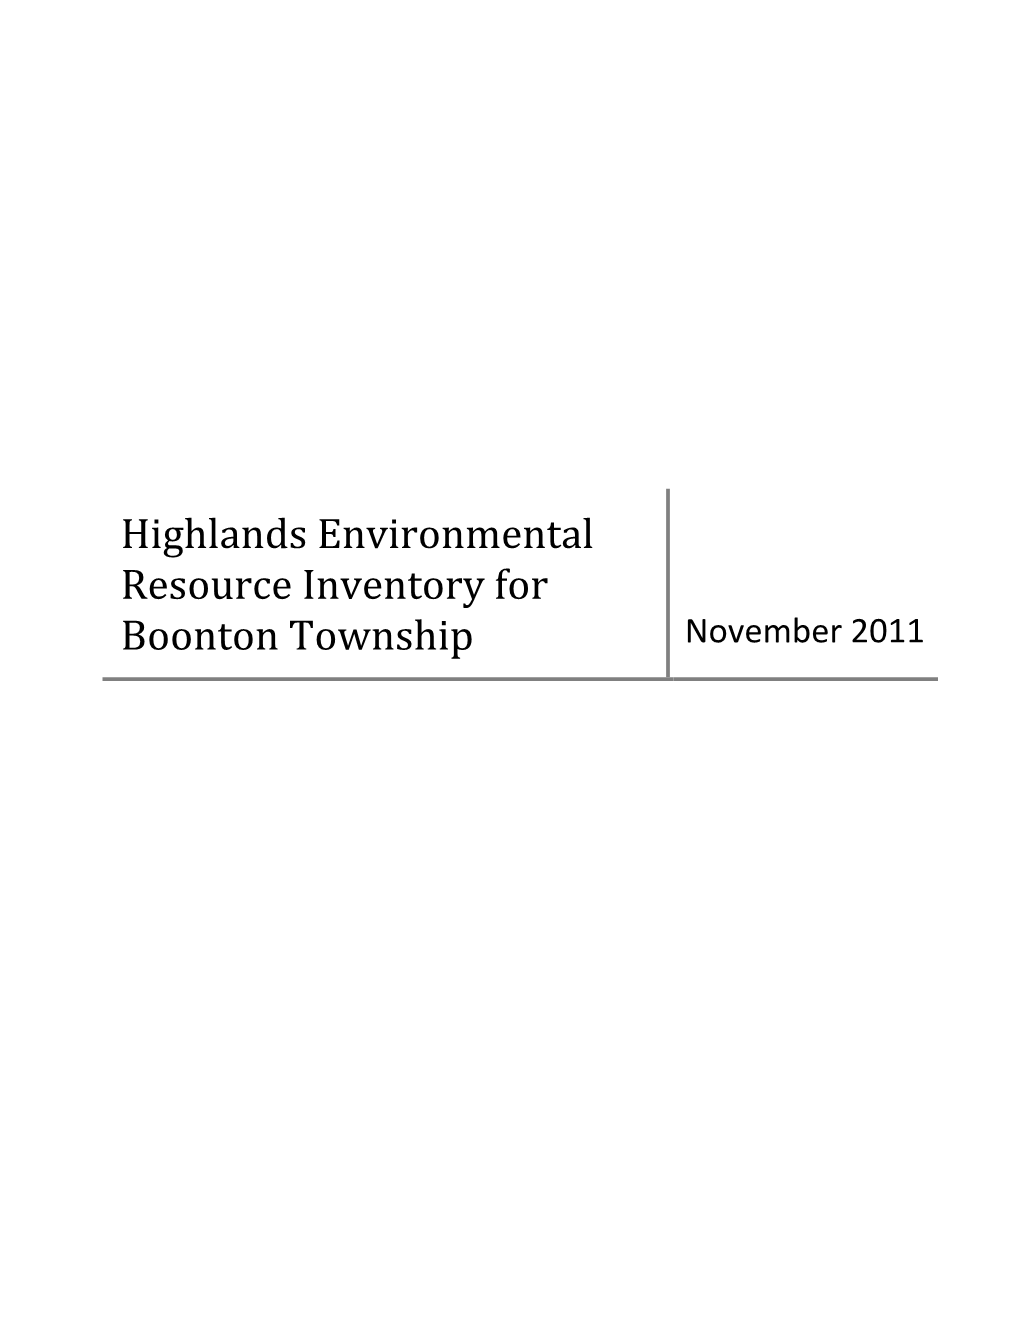 Boonton Township November 2011